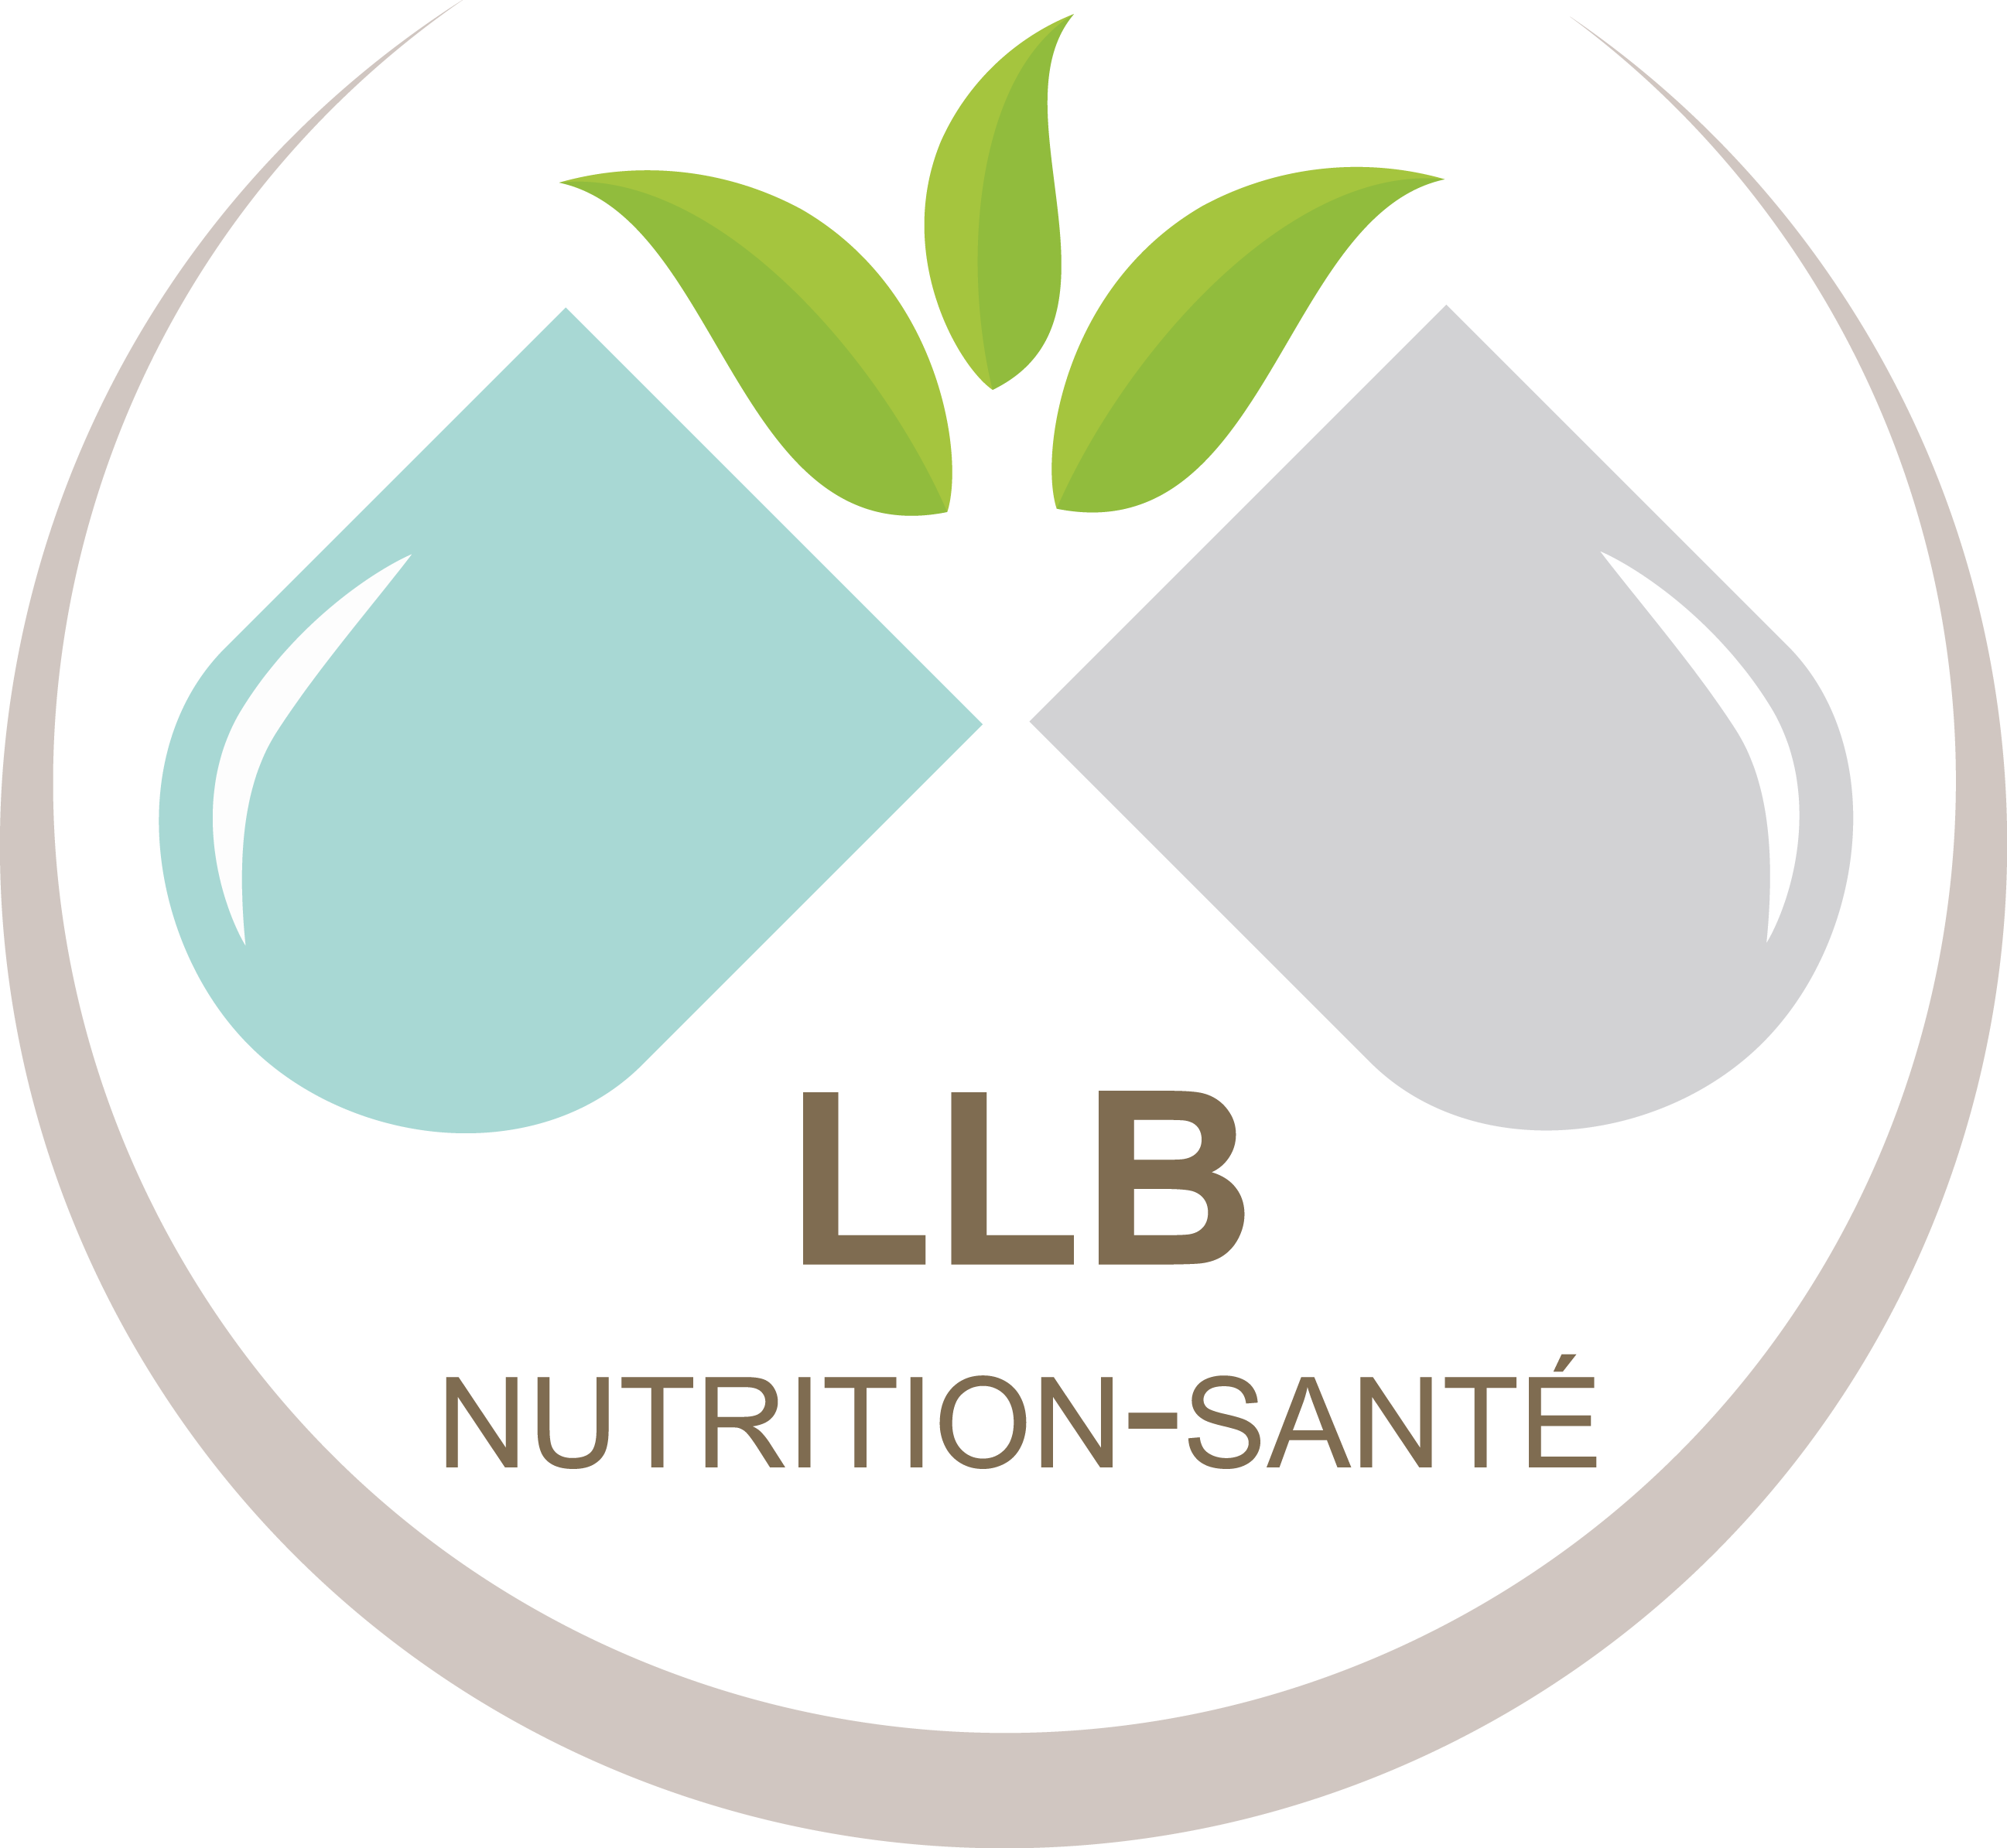 LLB nutrition-santé